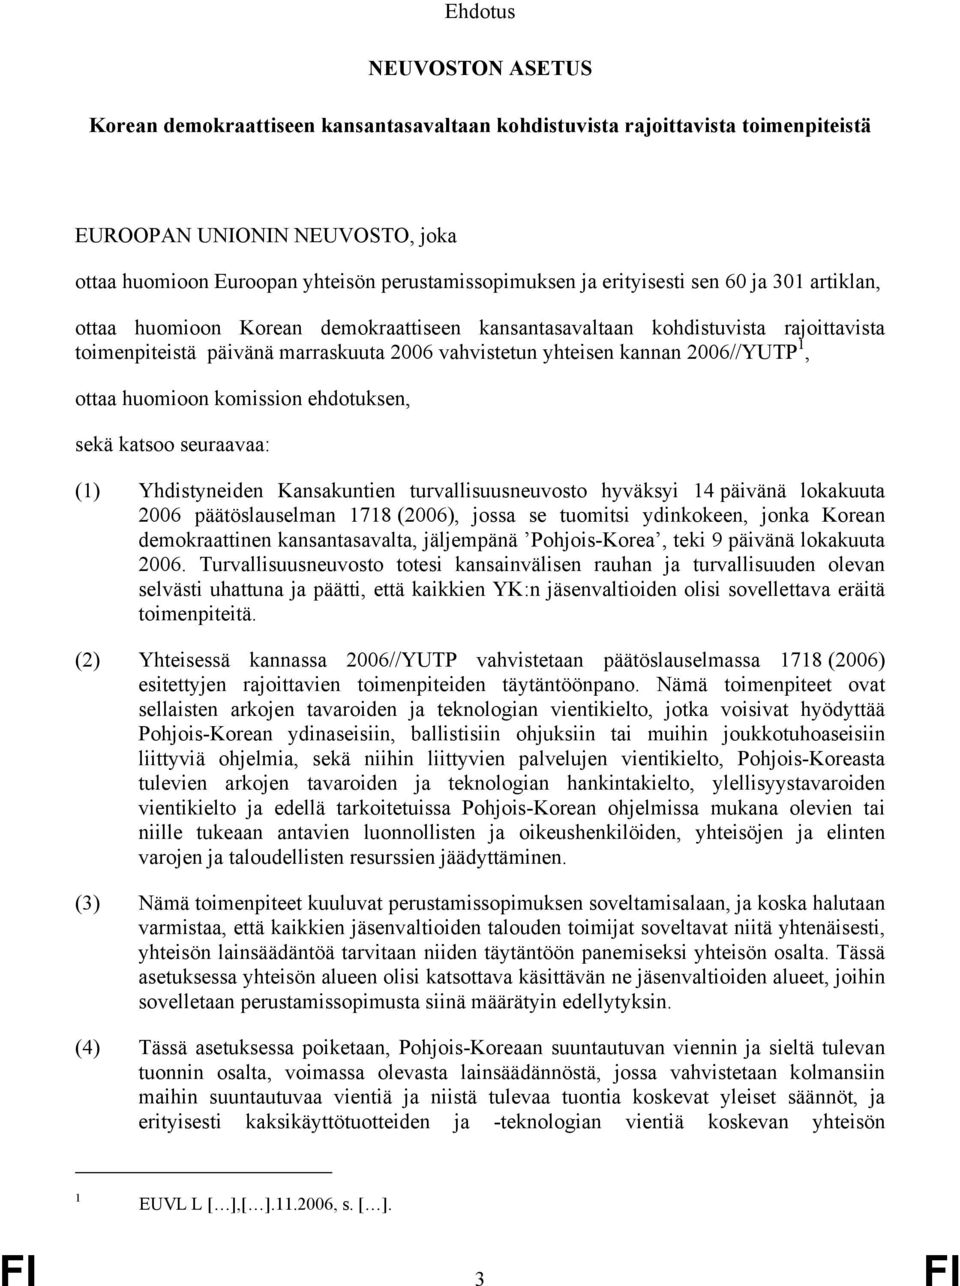 1, ottaa huomioon komission ehdotuksen, sekä katsoo seuraavaa: (1) Yhdistyneiden Kansakuntien turvallisuusneuvosto hyväksyi 14 päivänä lokakuuta 2006 päätöslauselman 1718 (2006), jossa se tuomitsi